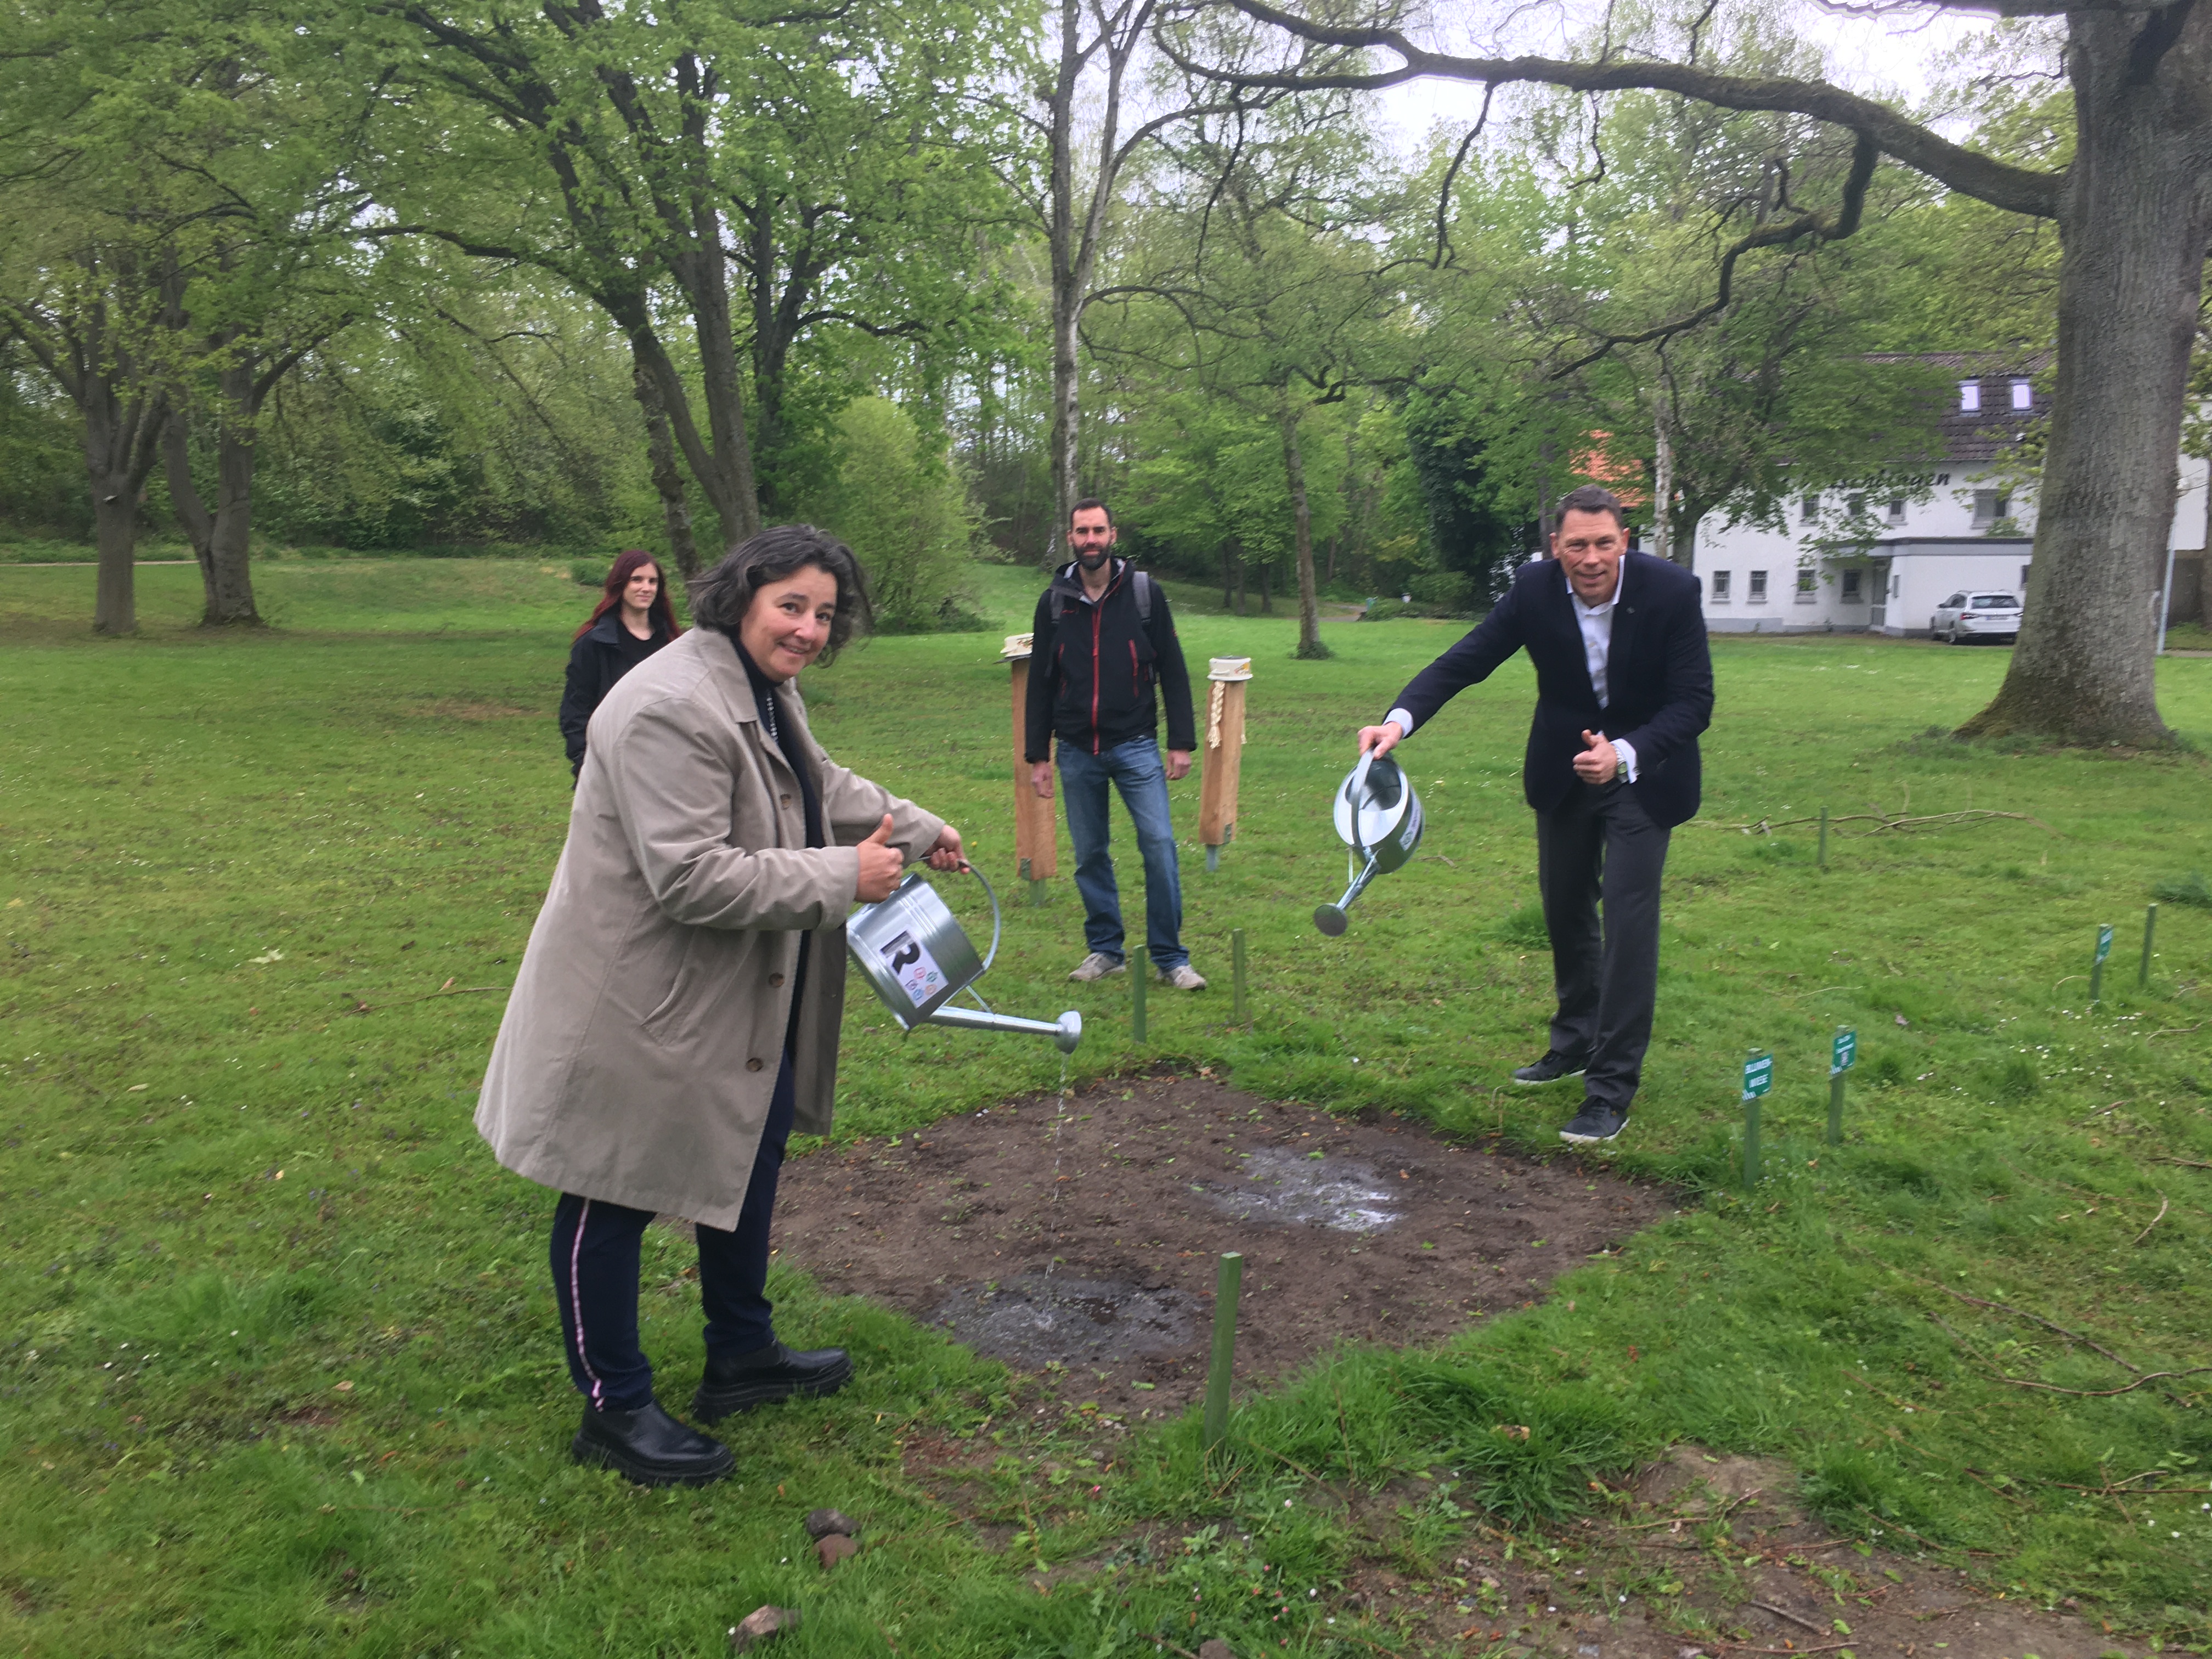 Los geht's im Revierpark Wischlingen mit der Aktion "Quadratmeter Experiment" zur Umweltbildung.